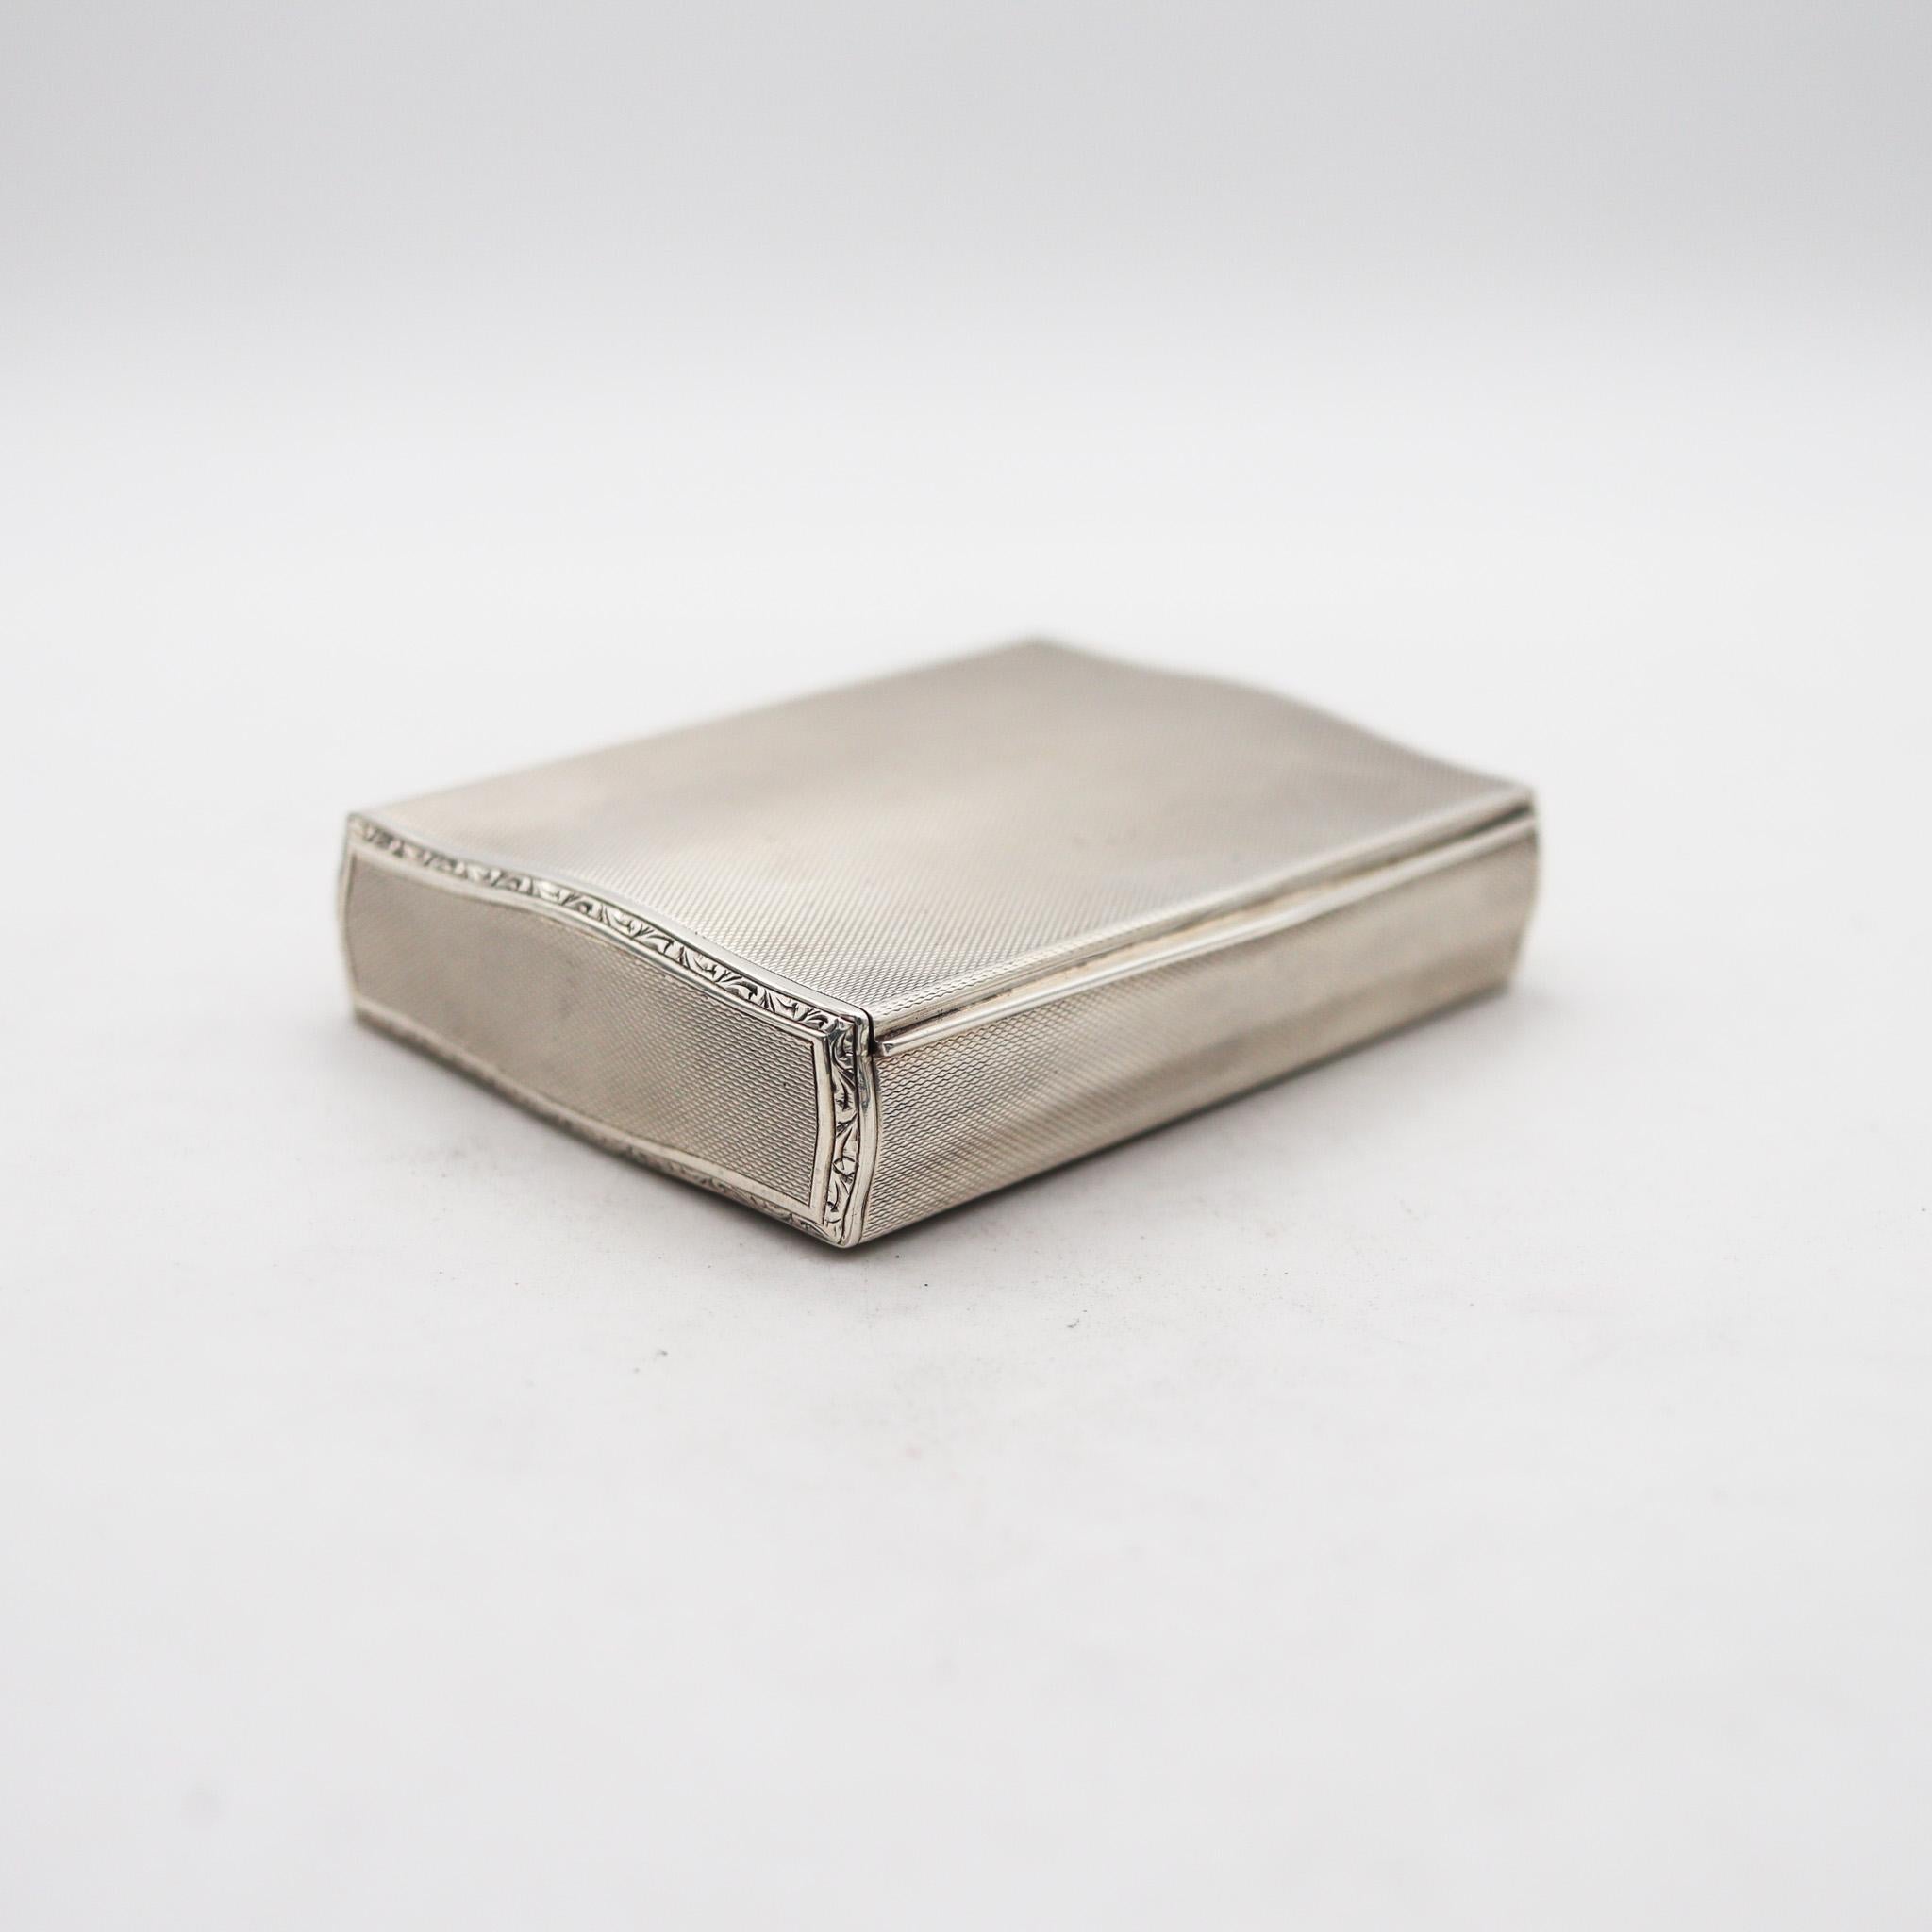 Eine guillochierte Schachtel aus Deutschland

Schöne Schachtel aus der Zeit des Art déco in Deutschland, ca. 1925. Diese außergewöhnliche Zigaretten-Schnupftabakdose wurde sorgfältig mit einer gewellten rechteckigen Form aus massivem .935/.999er